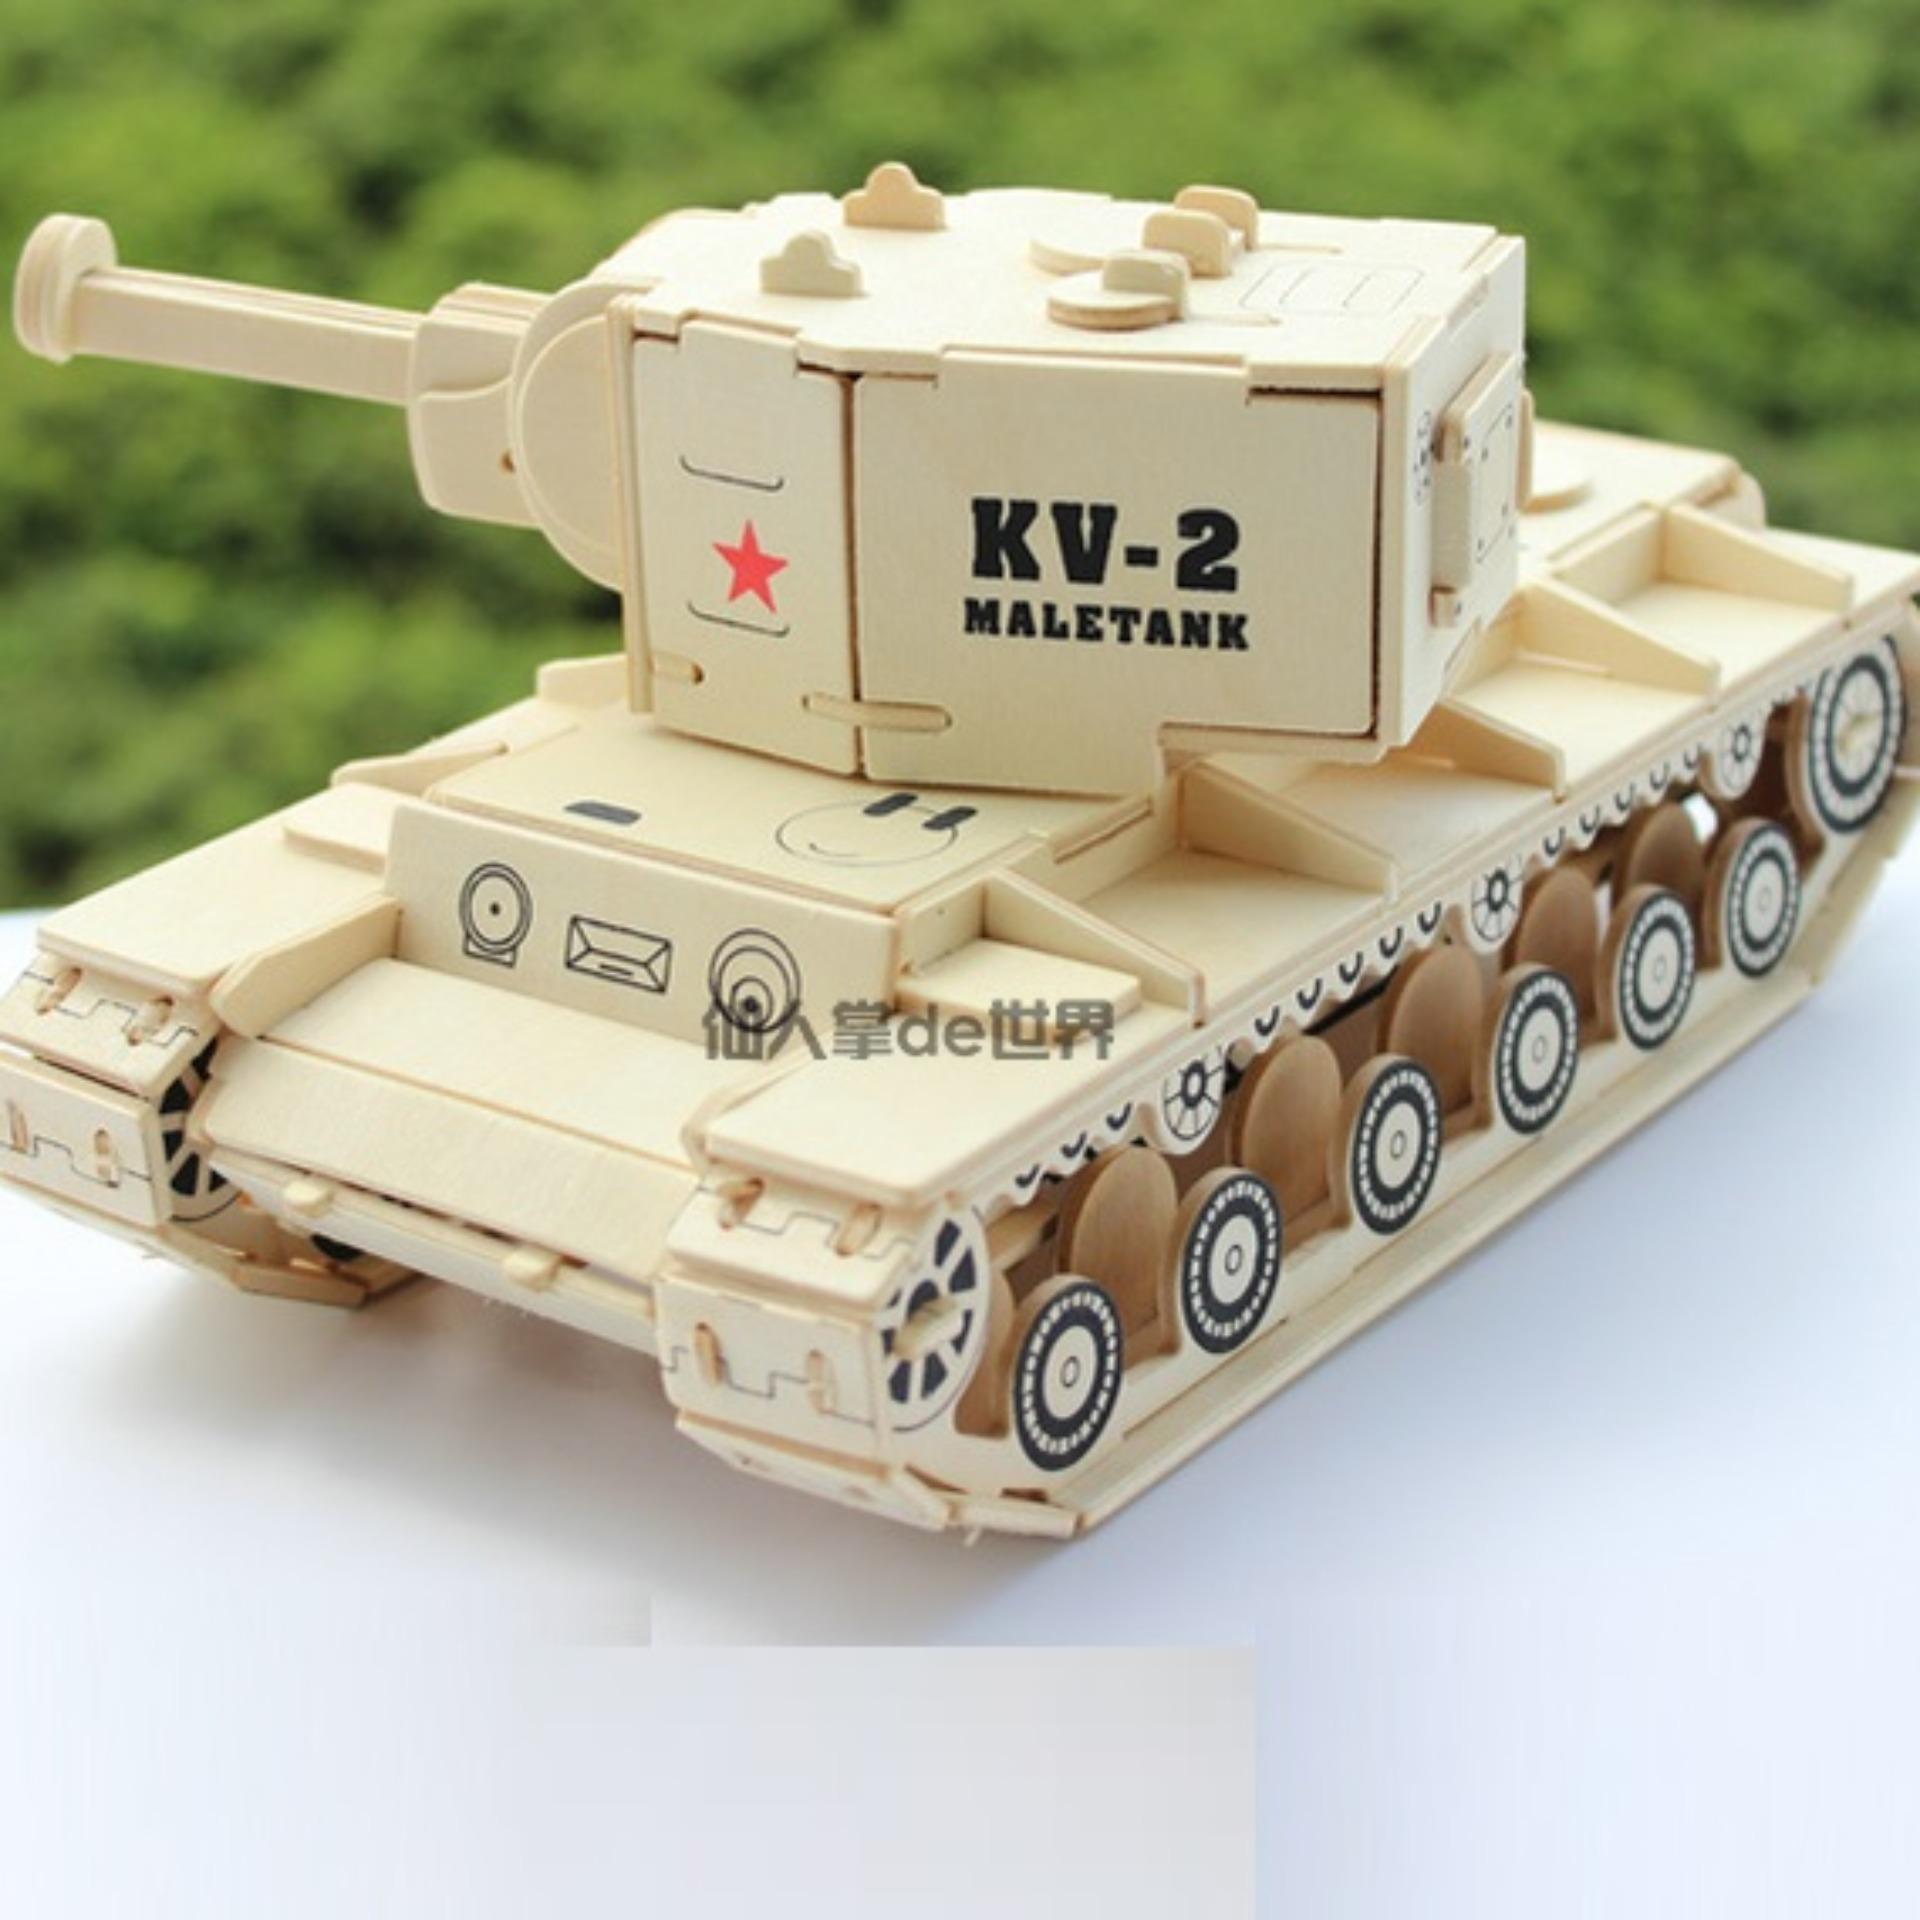 Đồ chơi gỗ lắp ráp 3D với mô hình xe tăng KV-2 sẽ là món quà tuyệt vời cho các bé yêu thích công nghệ và chiến tranh. Với bản thiết kế chi tiết, độ chính xác cao và chất liệu gỗ an toàn, đồ chơi này sẽ giúp trẻ phát triển khả năng tư duy, kỹ năng tay và giải trí bổ ích.